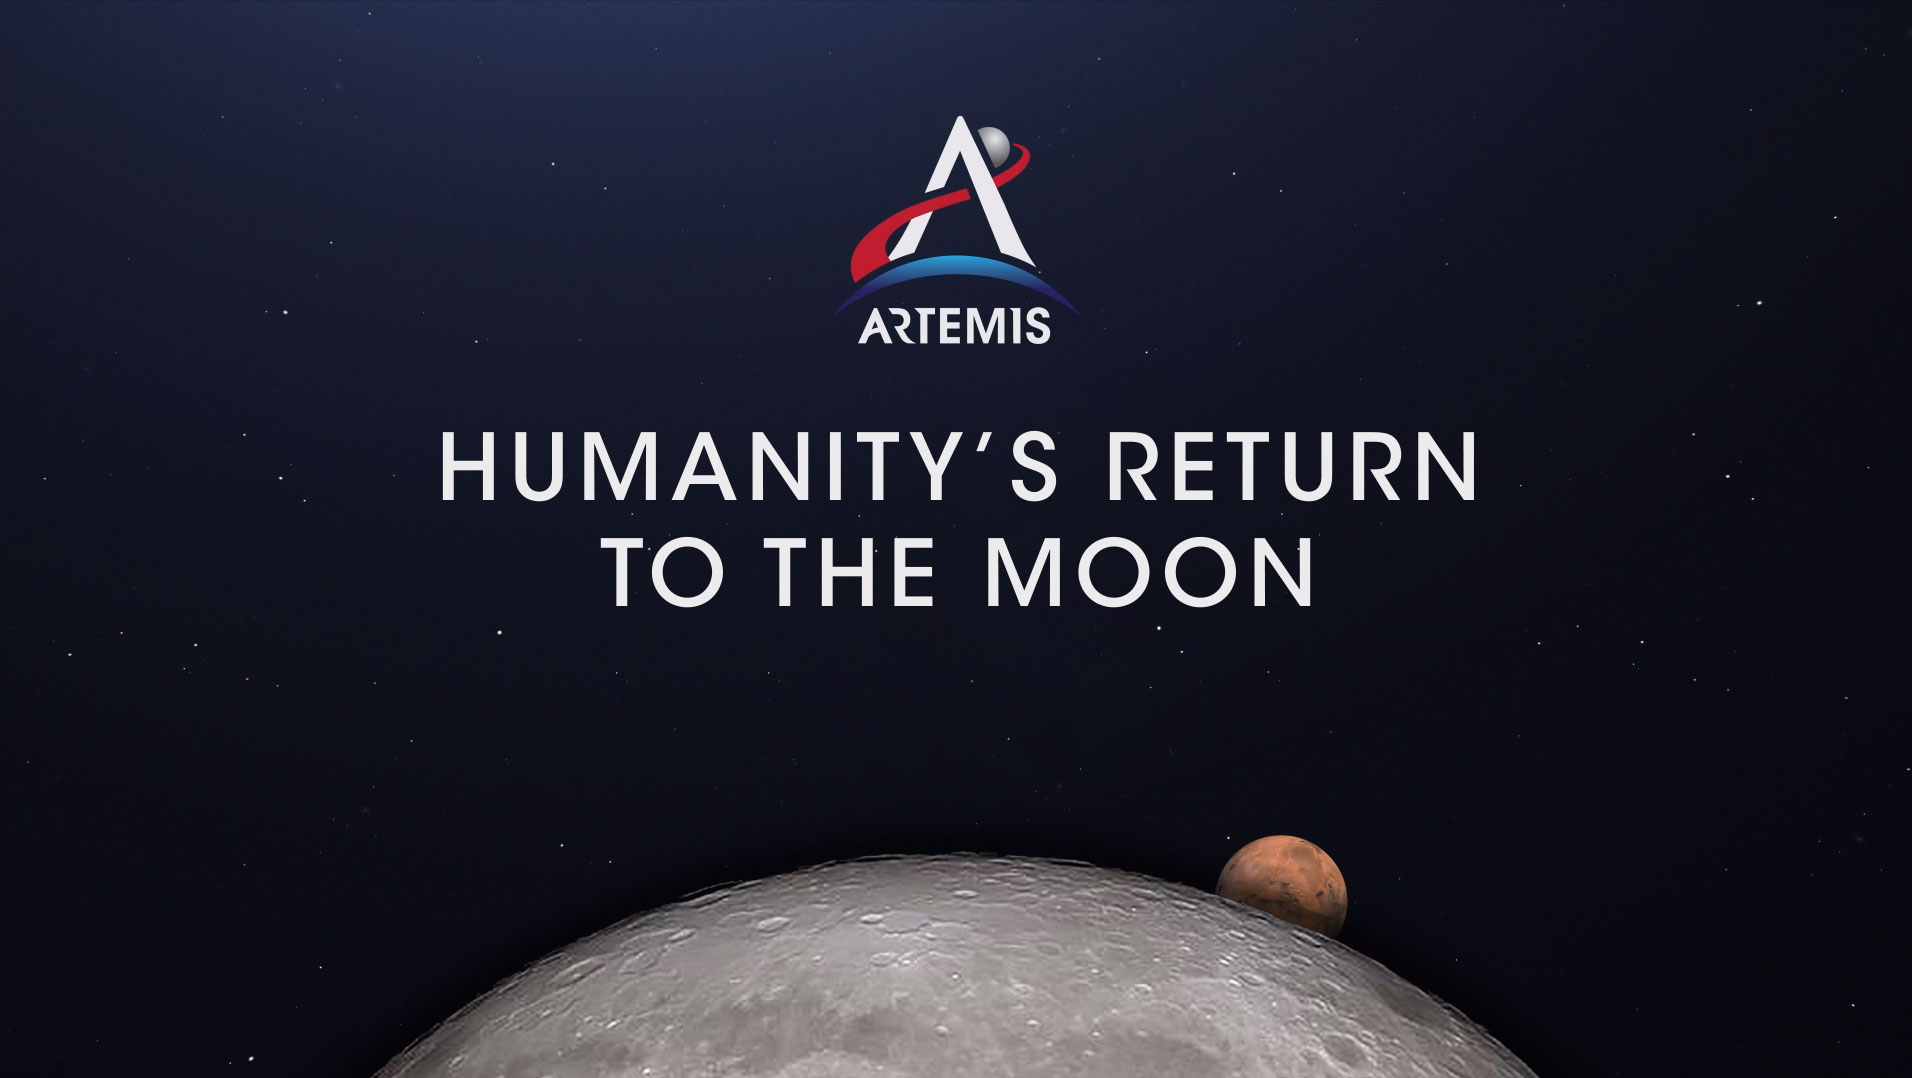 Artemis Mission